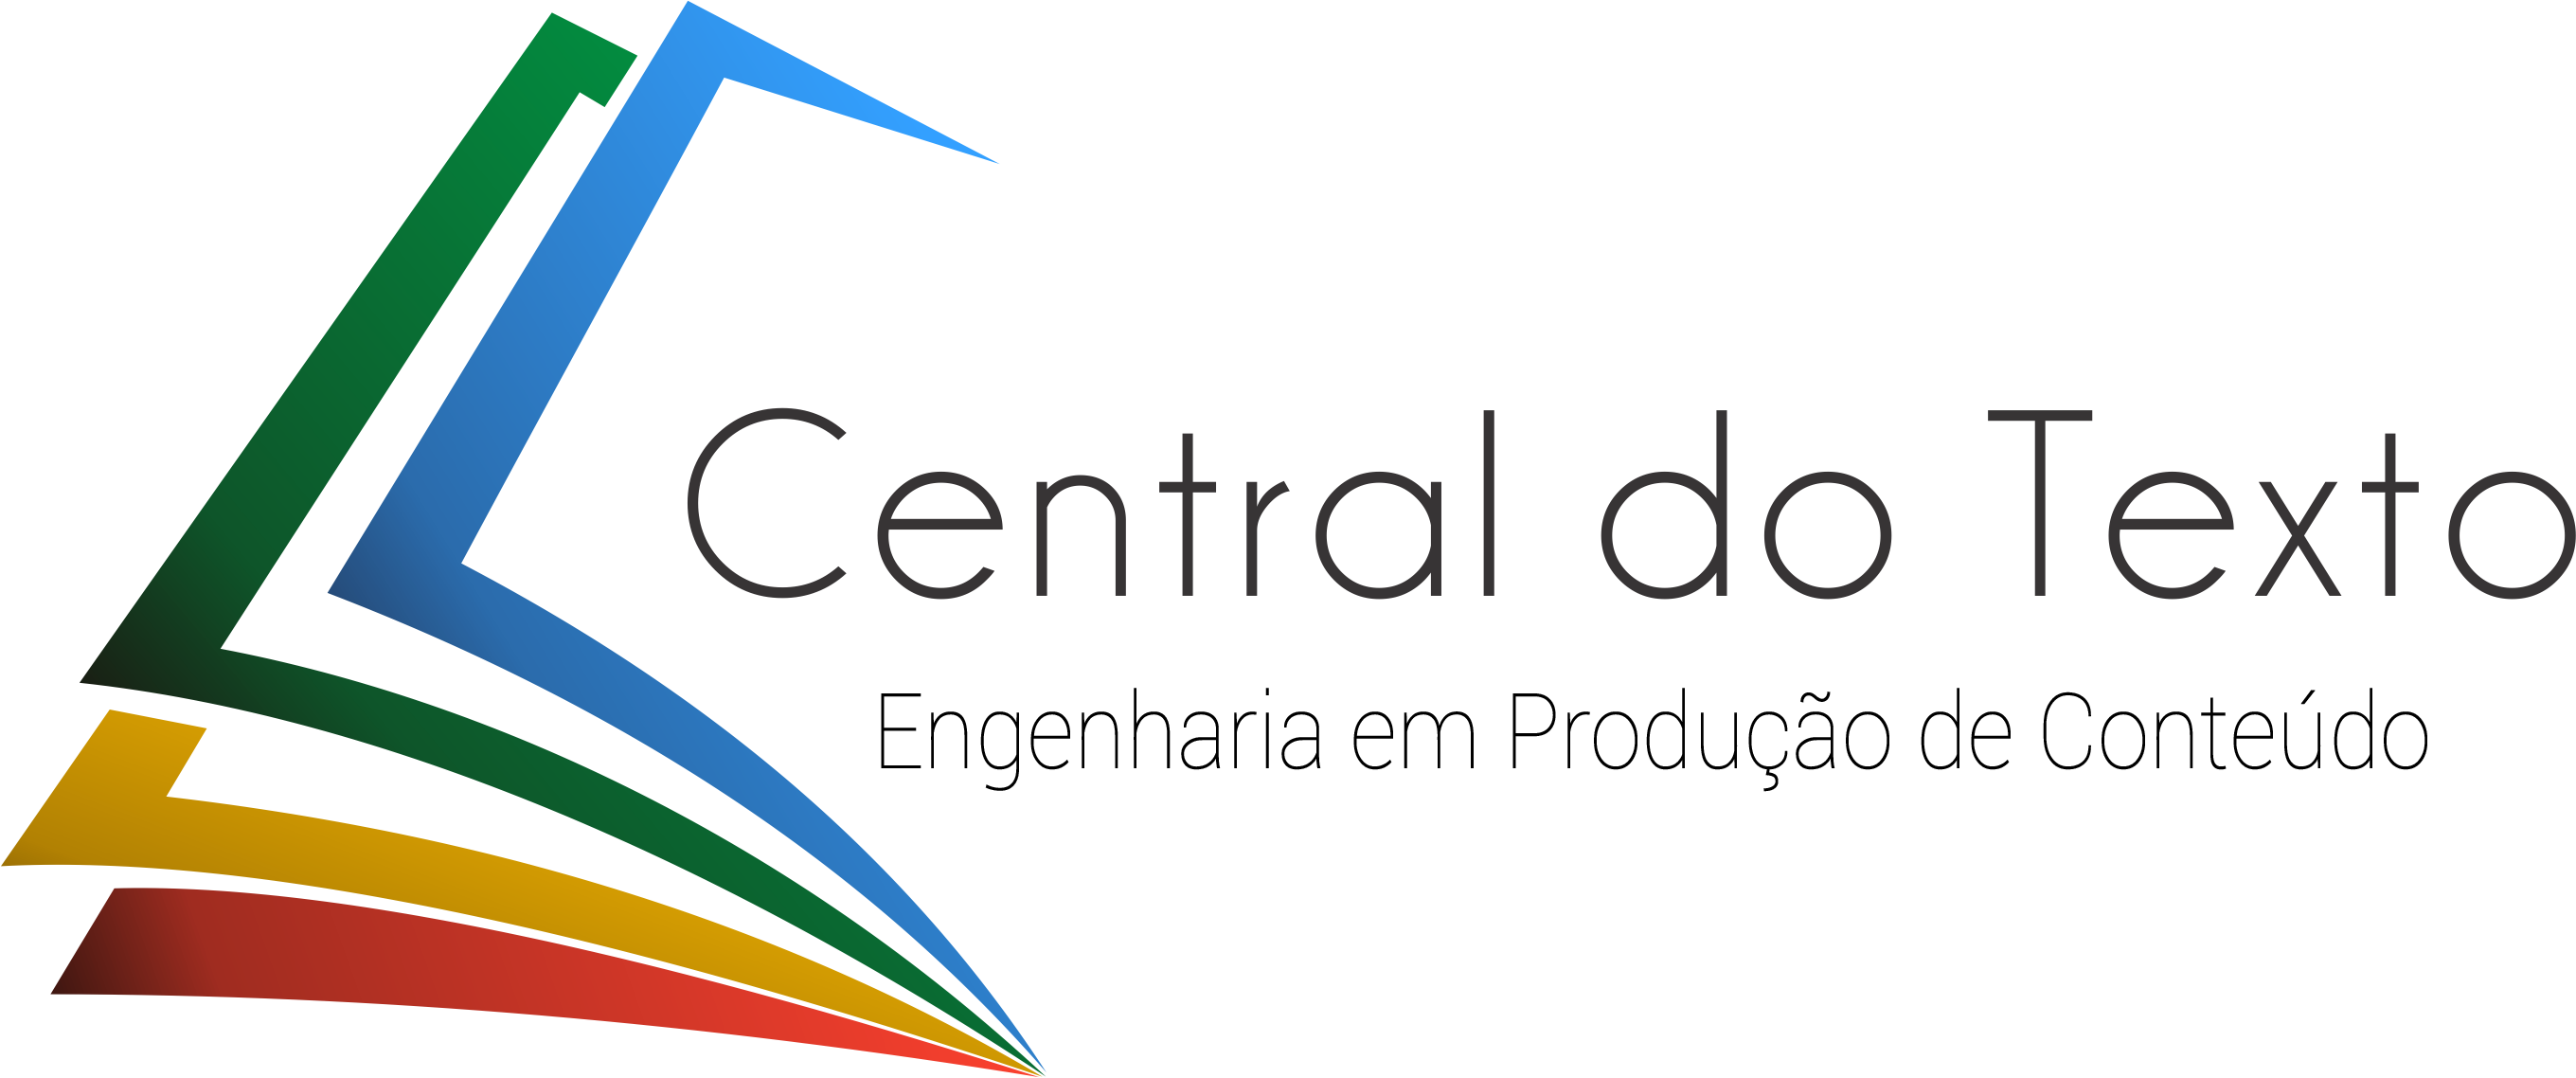 Central do Texto logotipo